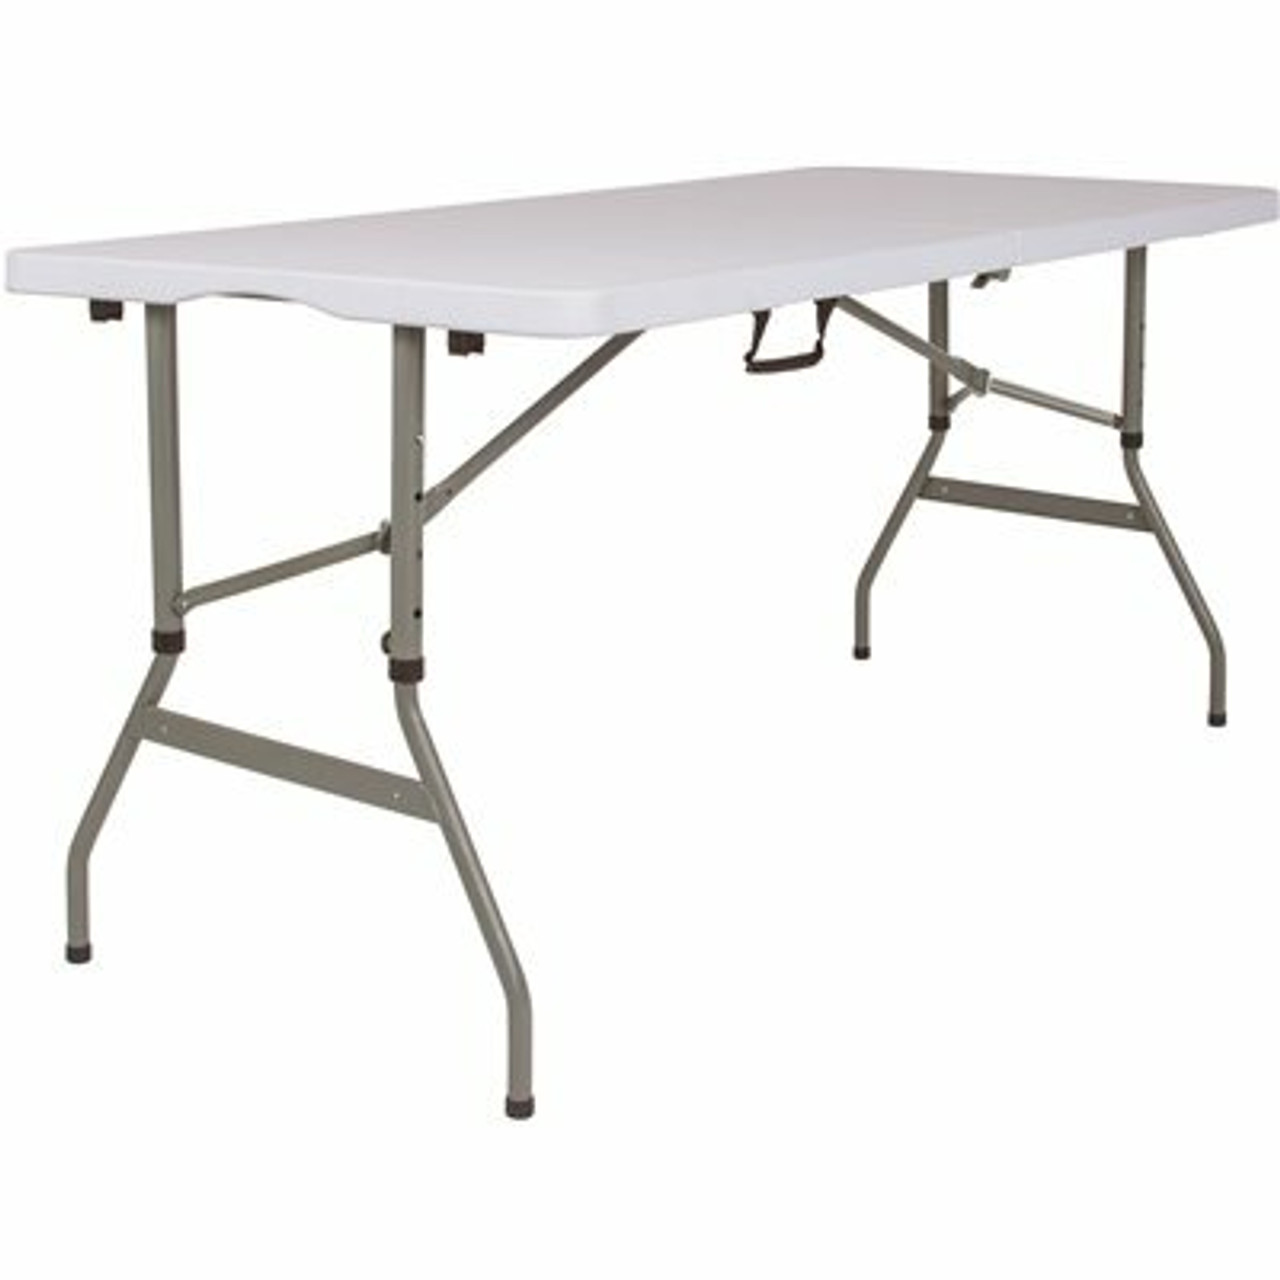 60 In. Granite White Plastic Tabletop Metal Frame Folding Table - 308685846